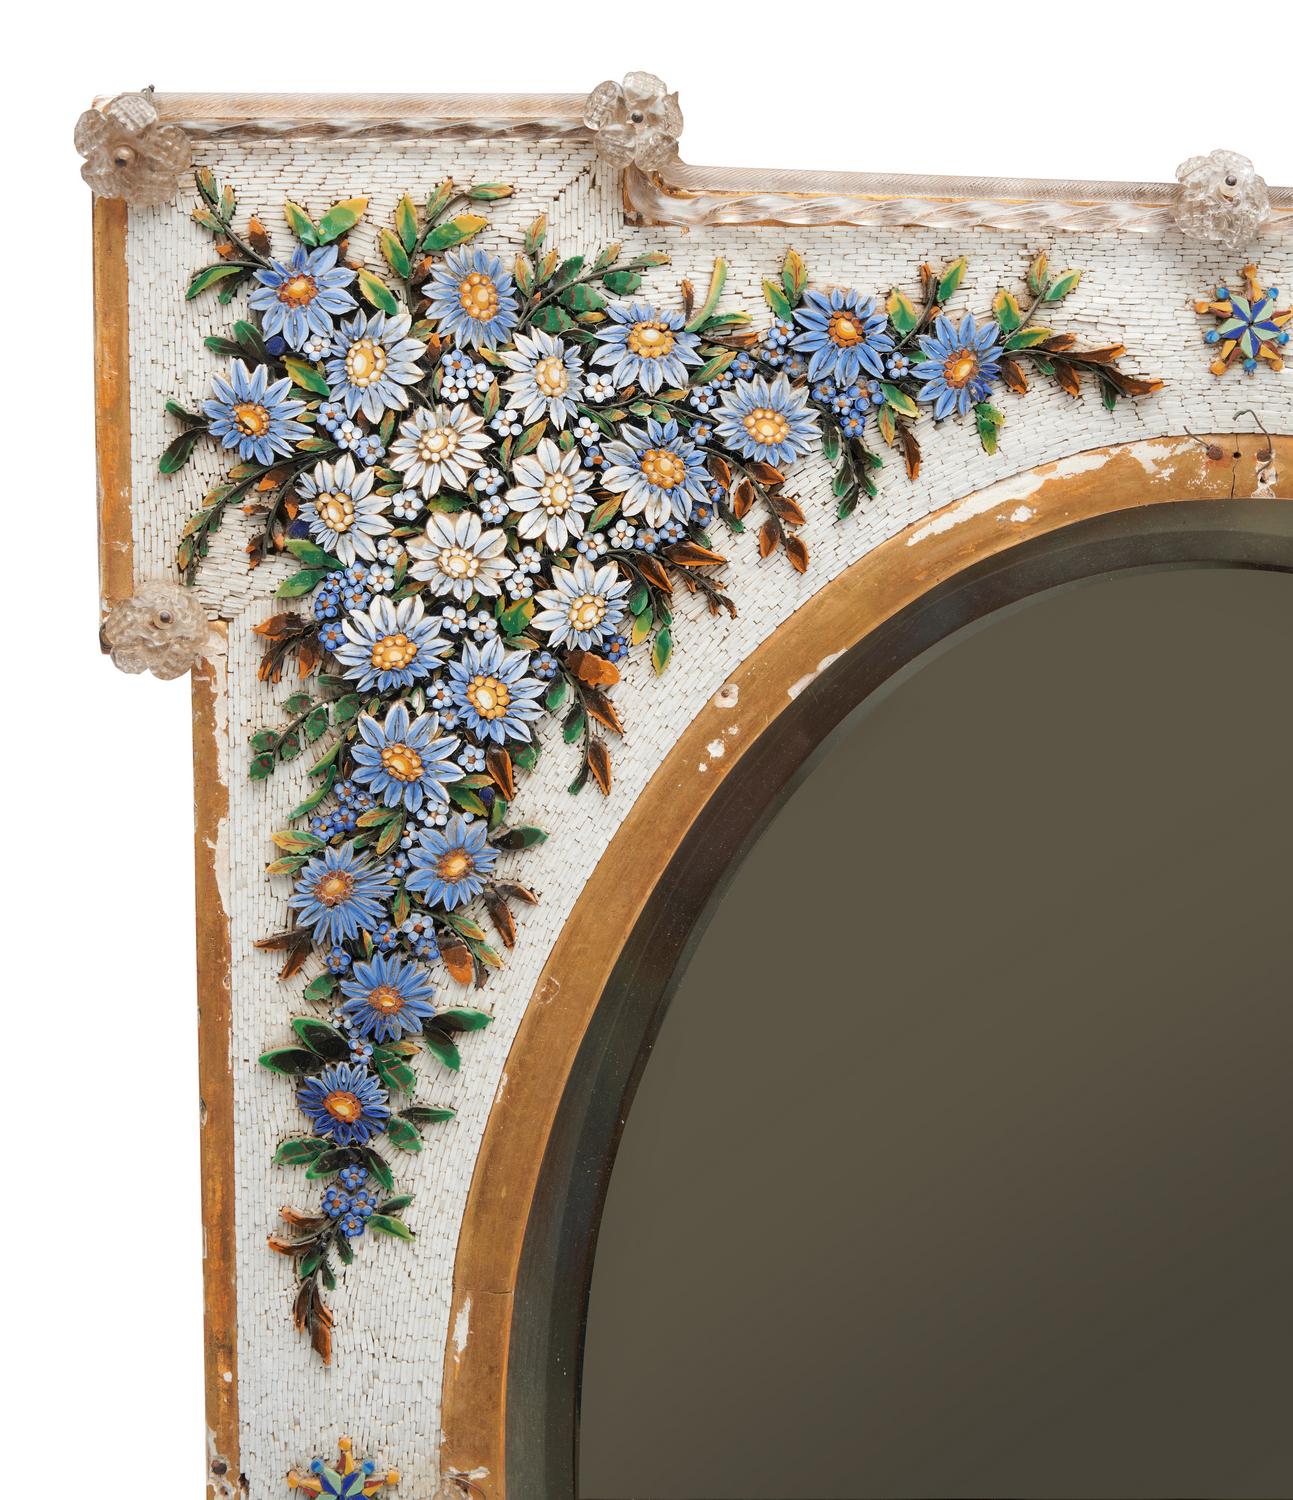 Miroir vénitien encadré de micromosaïques, fin du XIXe siècle

La plaque ovale est placée dans un cadre rectangulaire à oreilles, décoré de fleurs en mosaïque et de détails en verre.

Provenance : Collection privée de la Nouvelle-Galles du Sud.